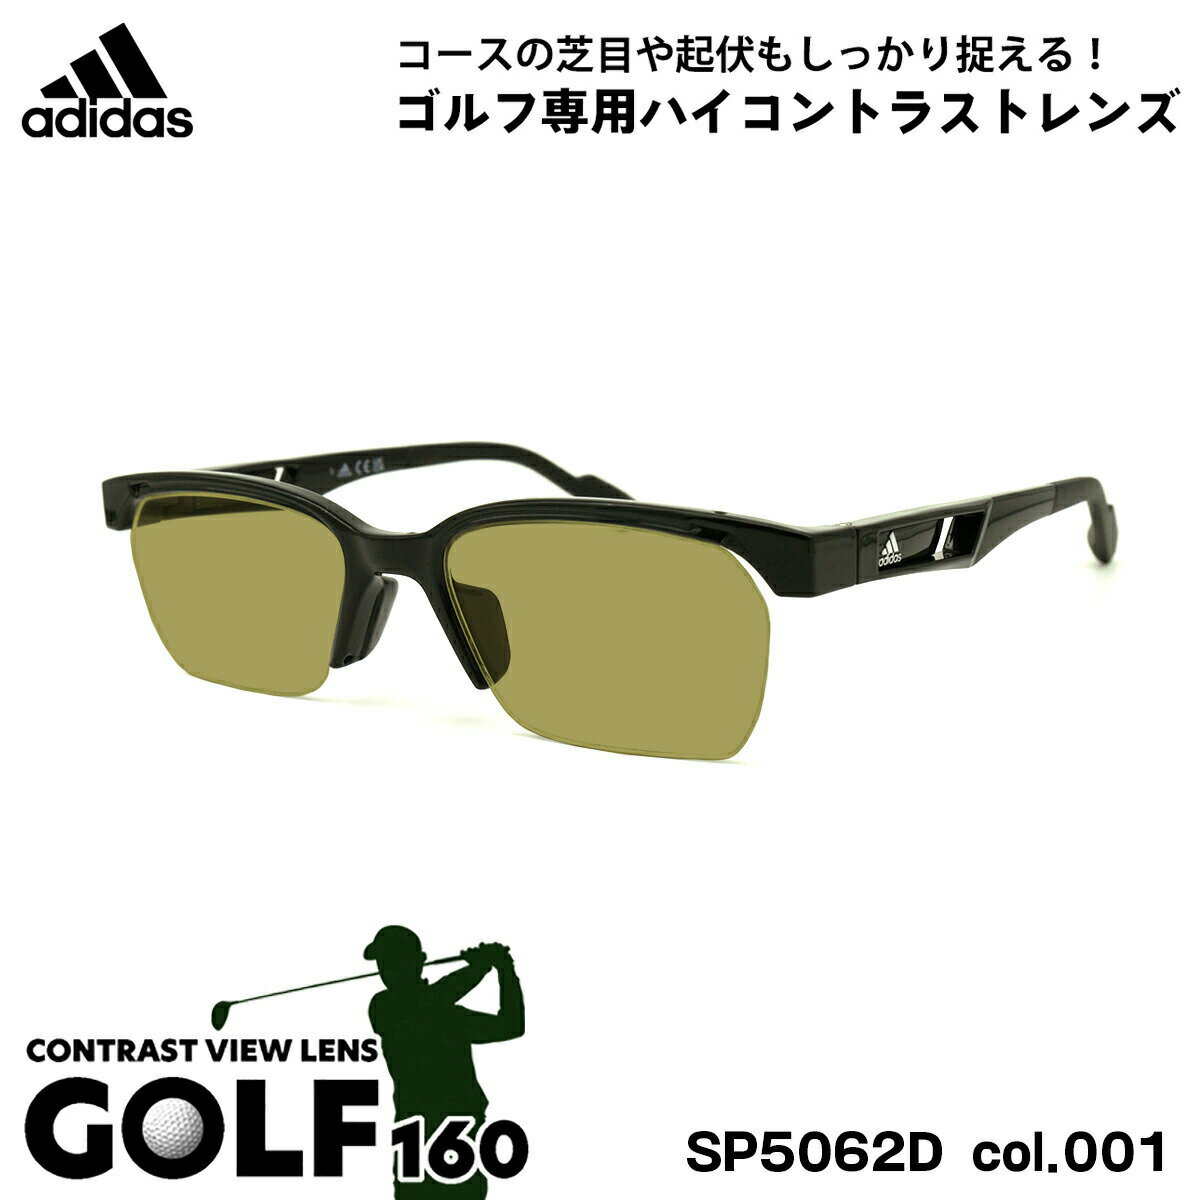 アディダス サングラス ゴルフ SP5062D (SP5062D/V) col.001 52mm adidas アジアンフィット 国内正規品 UVカット メンズ レディース GOLF160